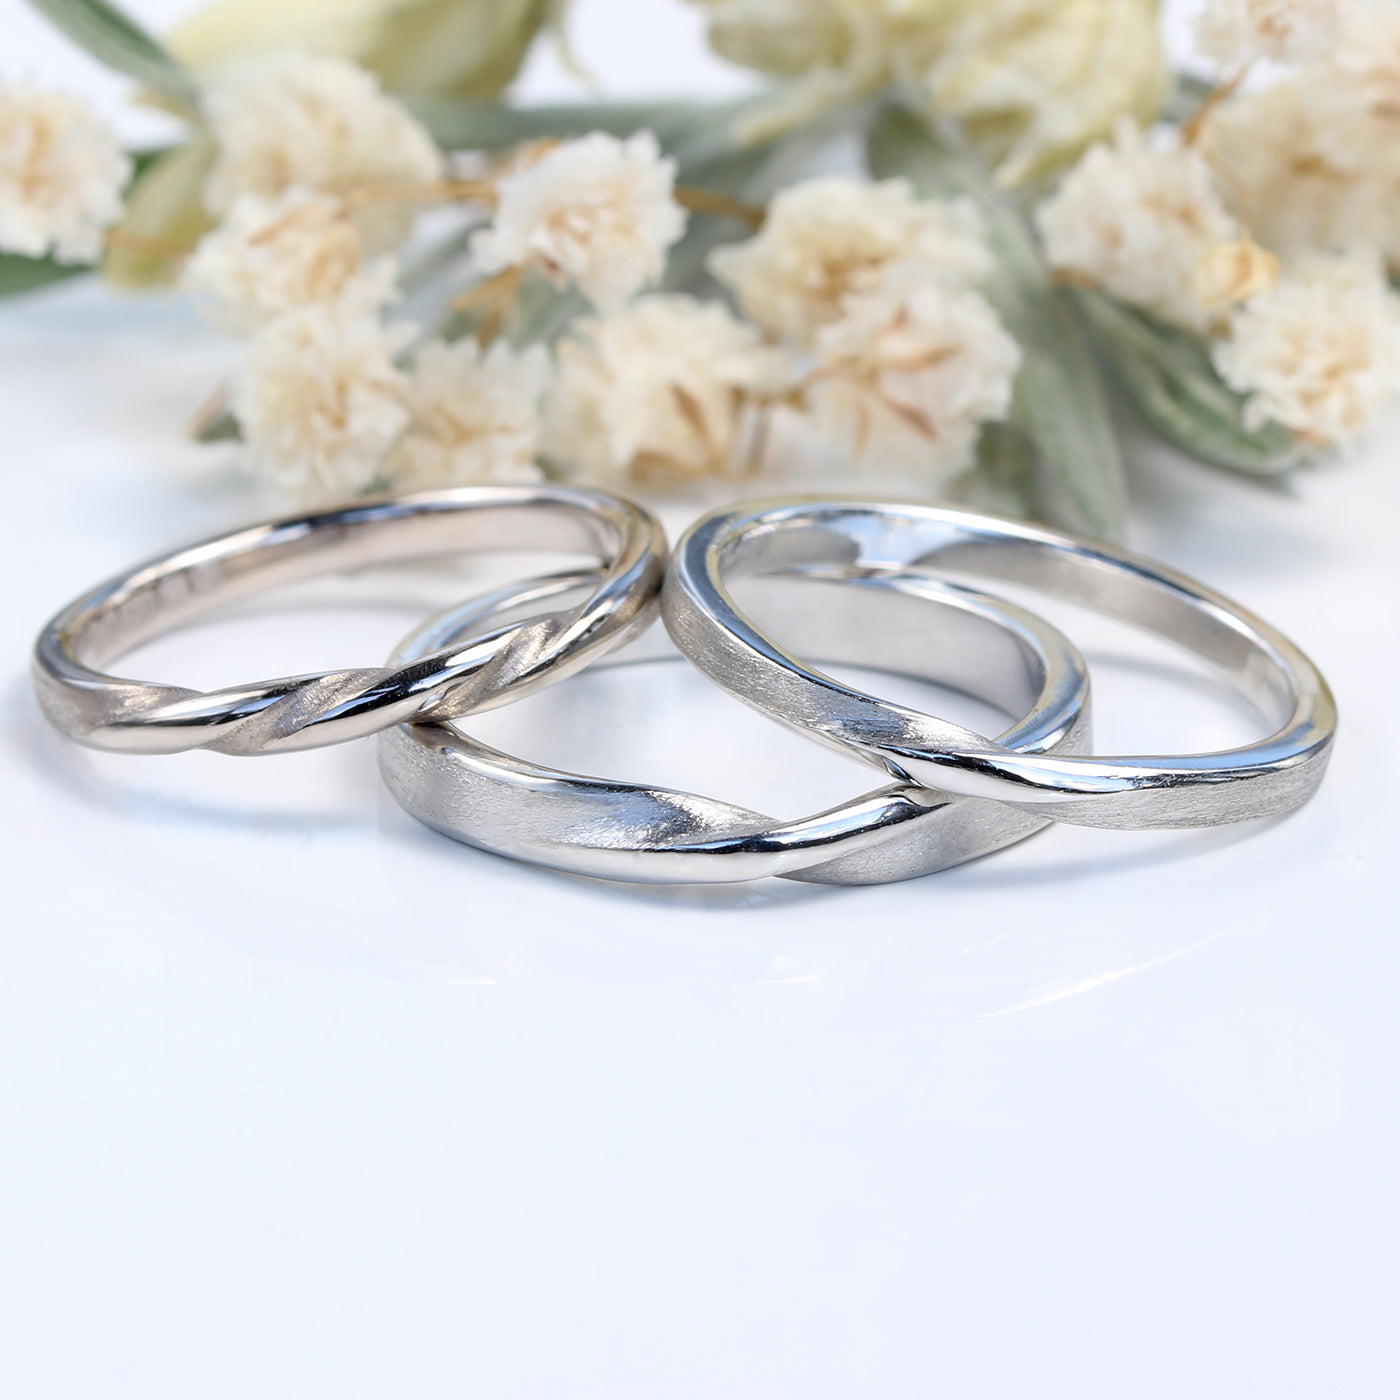 950 Platinum 3mm Spun Silk Ribbon Twist Wedding Ring (Size O 1/2, Resize G-P)